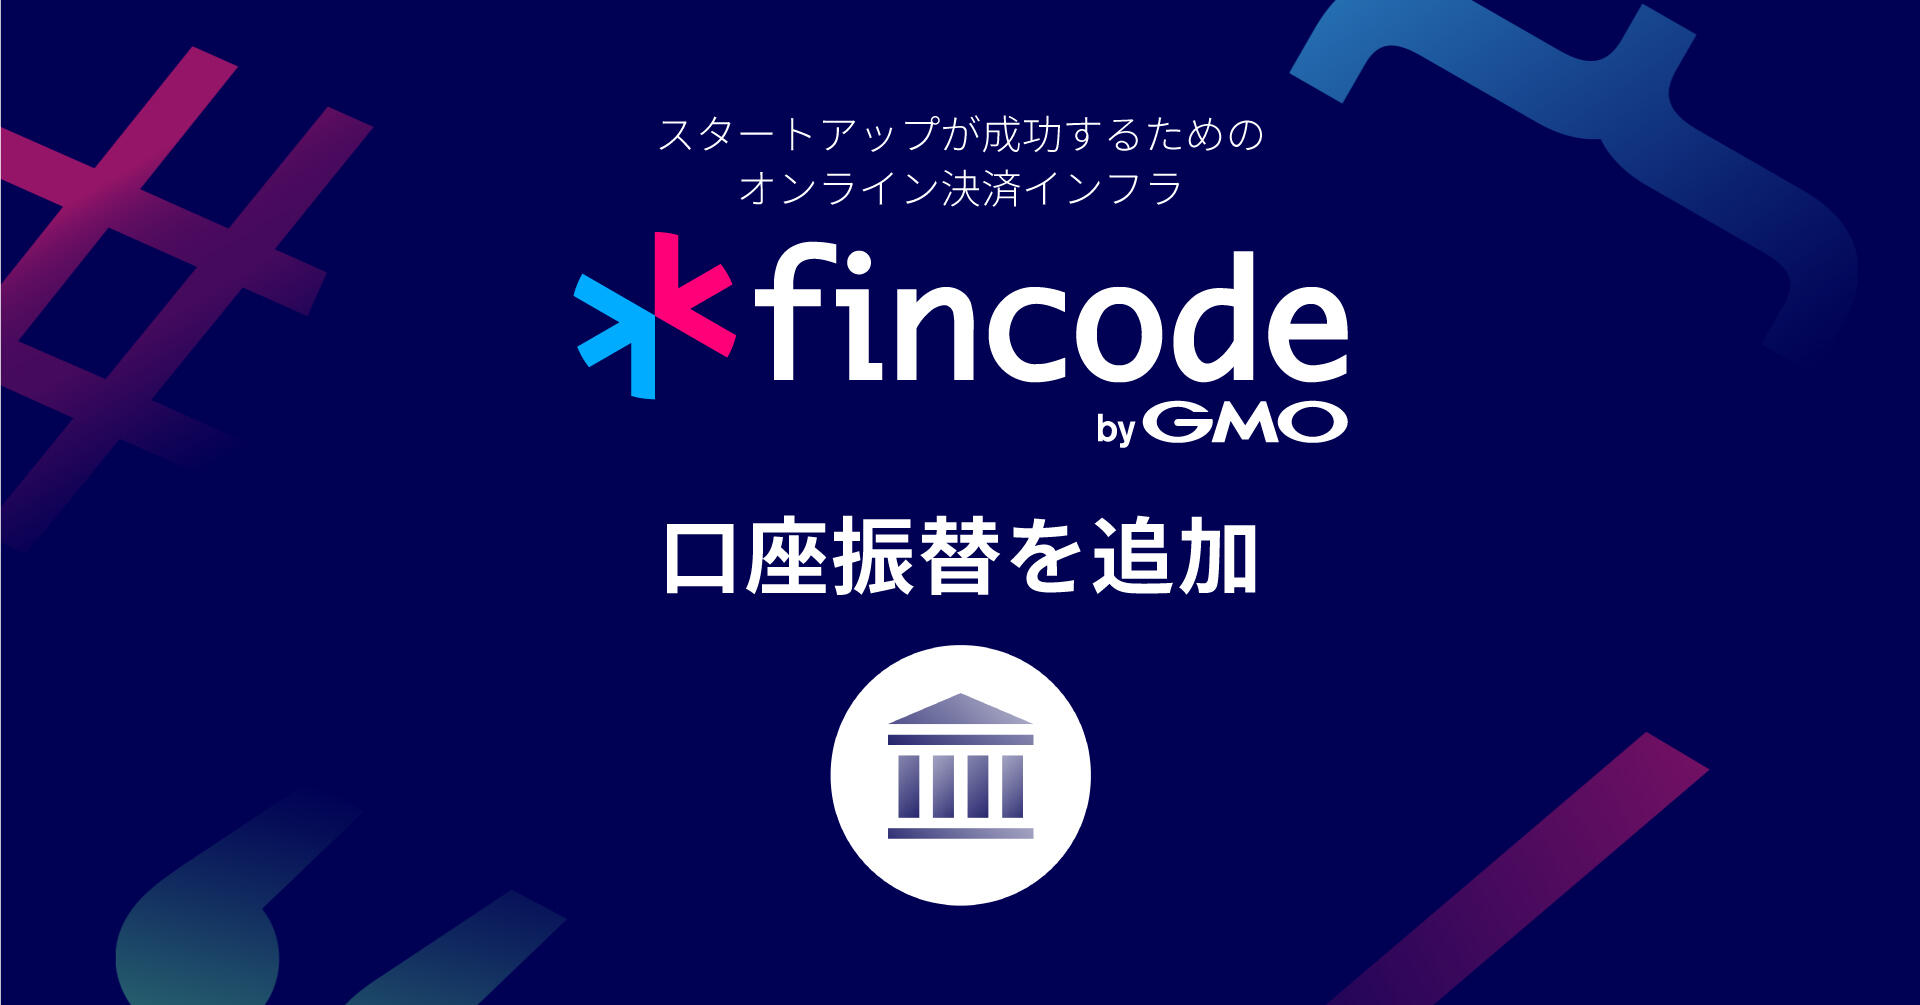 オンライン決済インフラ「fincode byGMO」、決済手段に「口座振替」を追加